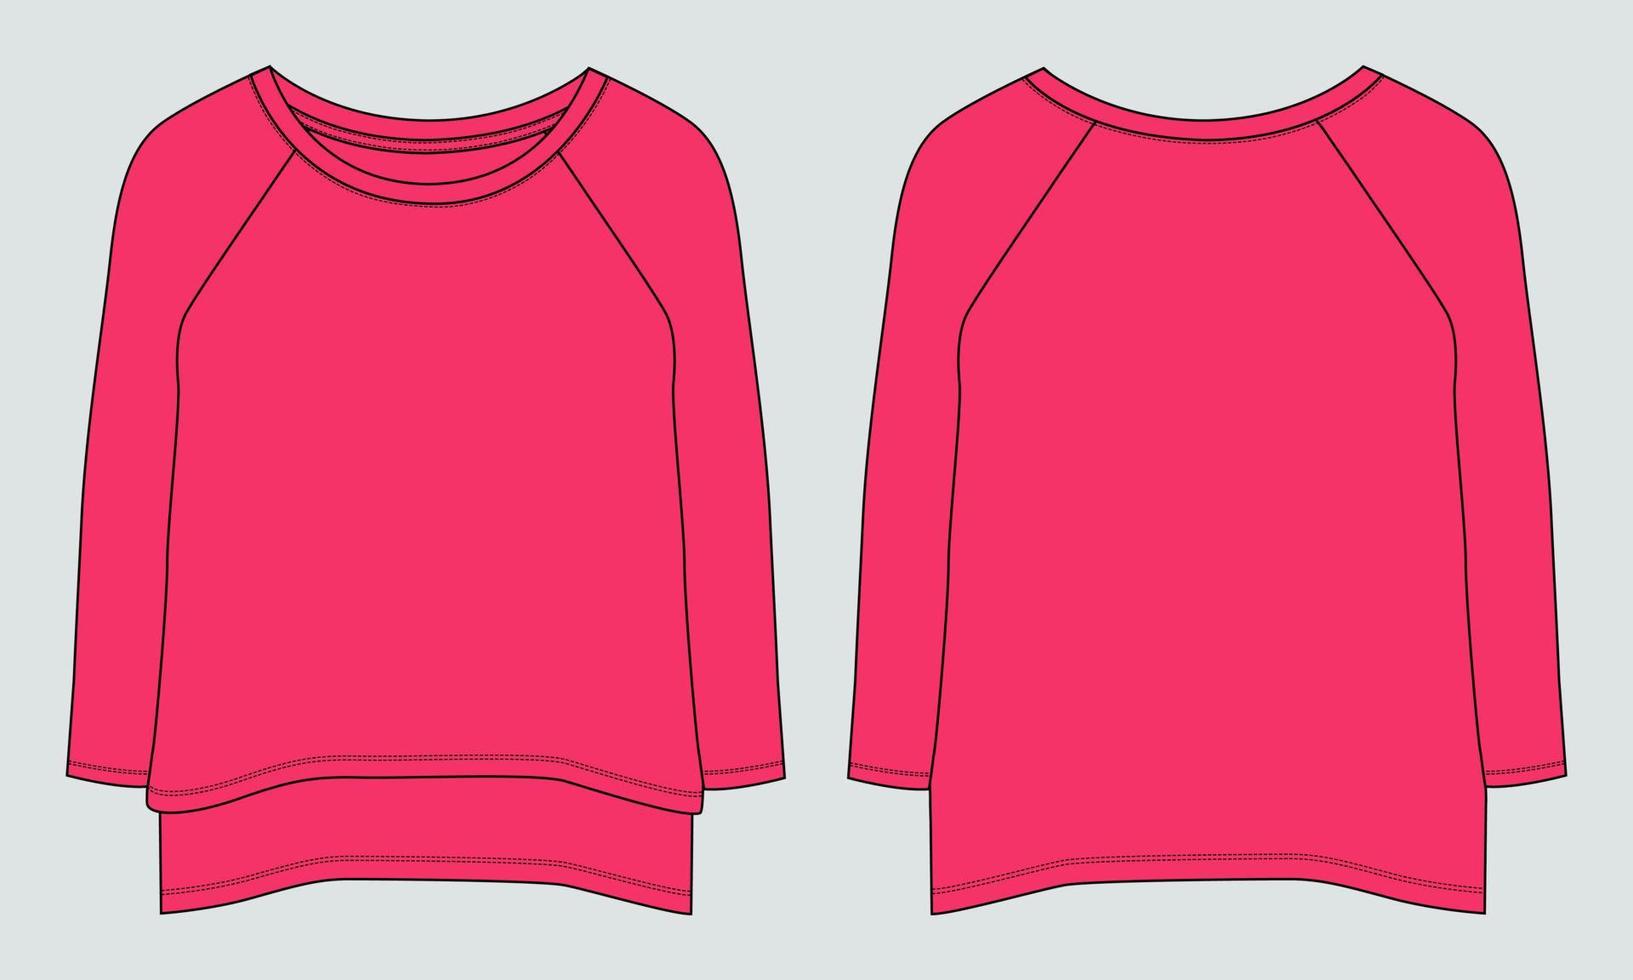 Langarm-T-Shirt Kleid Design technische Mode flache Skizze Vektor-Illustration Vorlage für Babys und Damen. baumwollstoff kleidung mock-up-vorder- und rückansicht. vektor